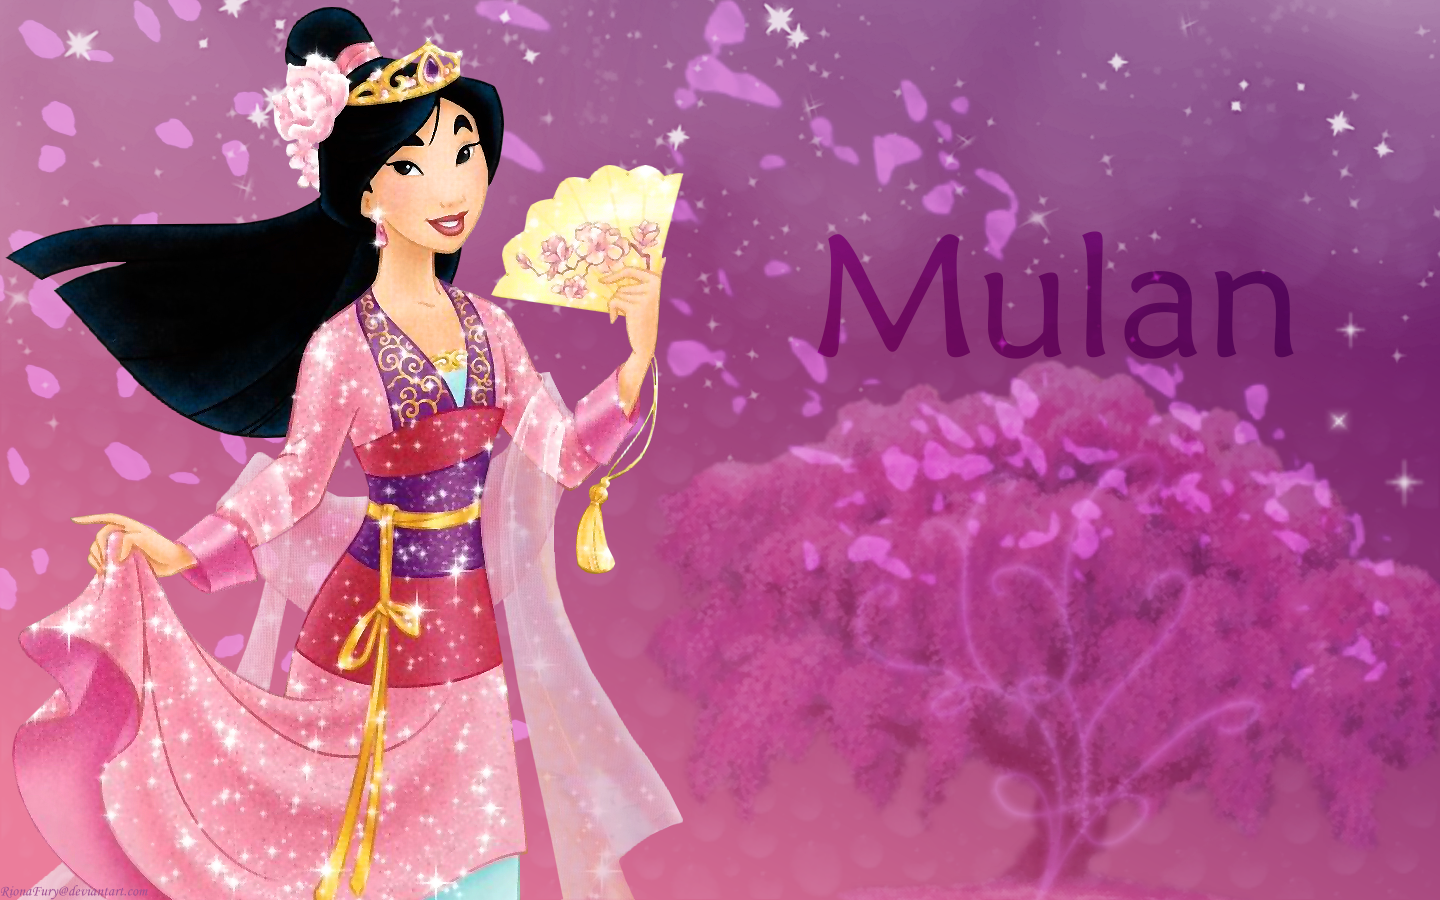 Disney Princess Wallpaper: Mulan. Mulan disney, Disney princess, Disney princess wallpaper